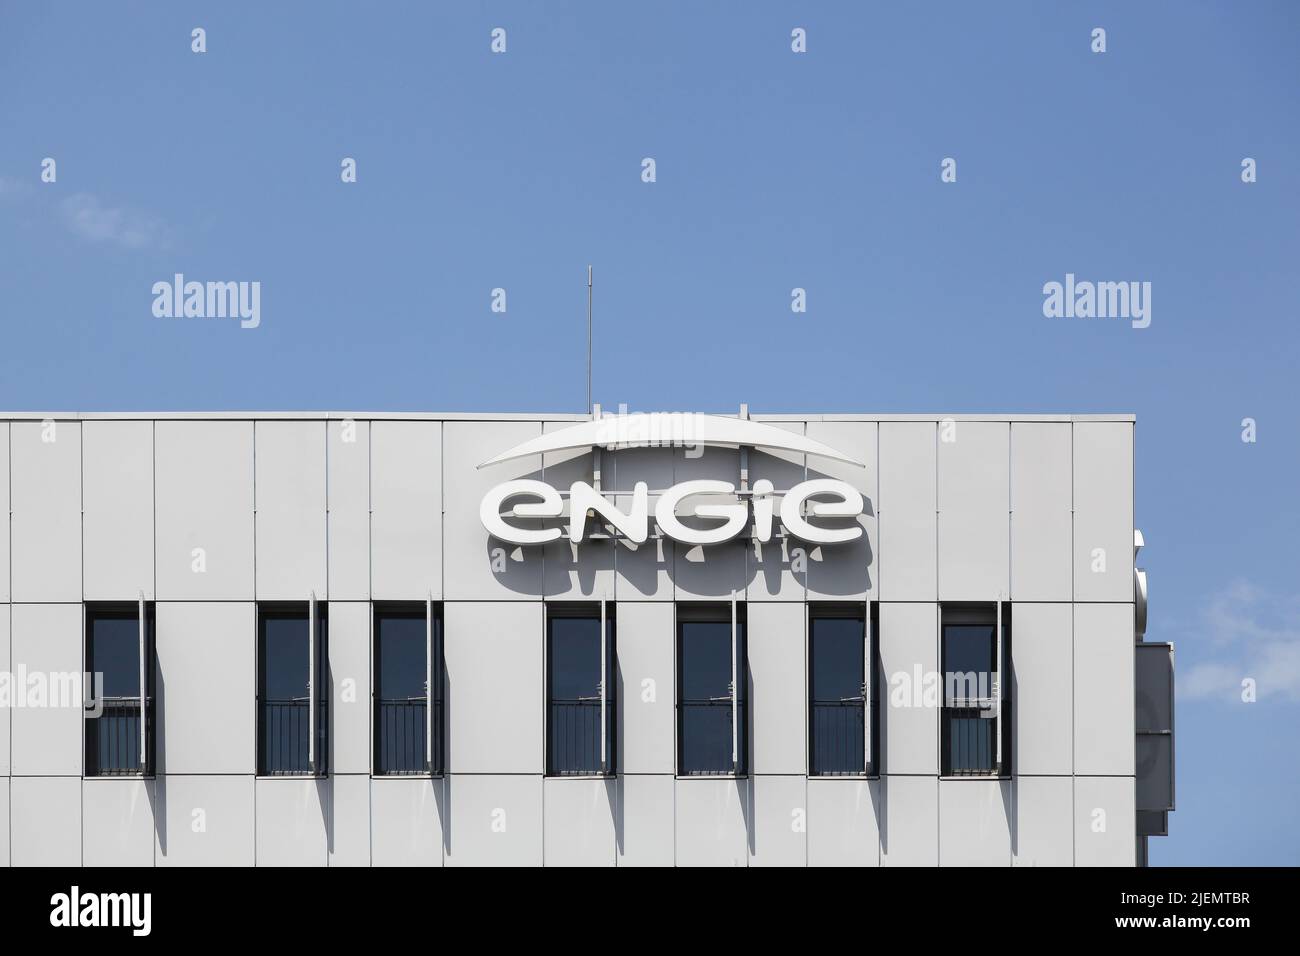 Lyon, Francia - 1 de julio de 2020: Engie Building y oficinas. Engie es una multinacional francesa de servicios eléctricos Foto de stock